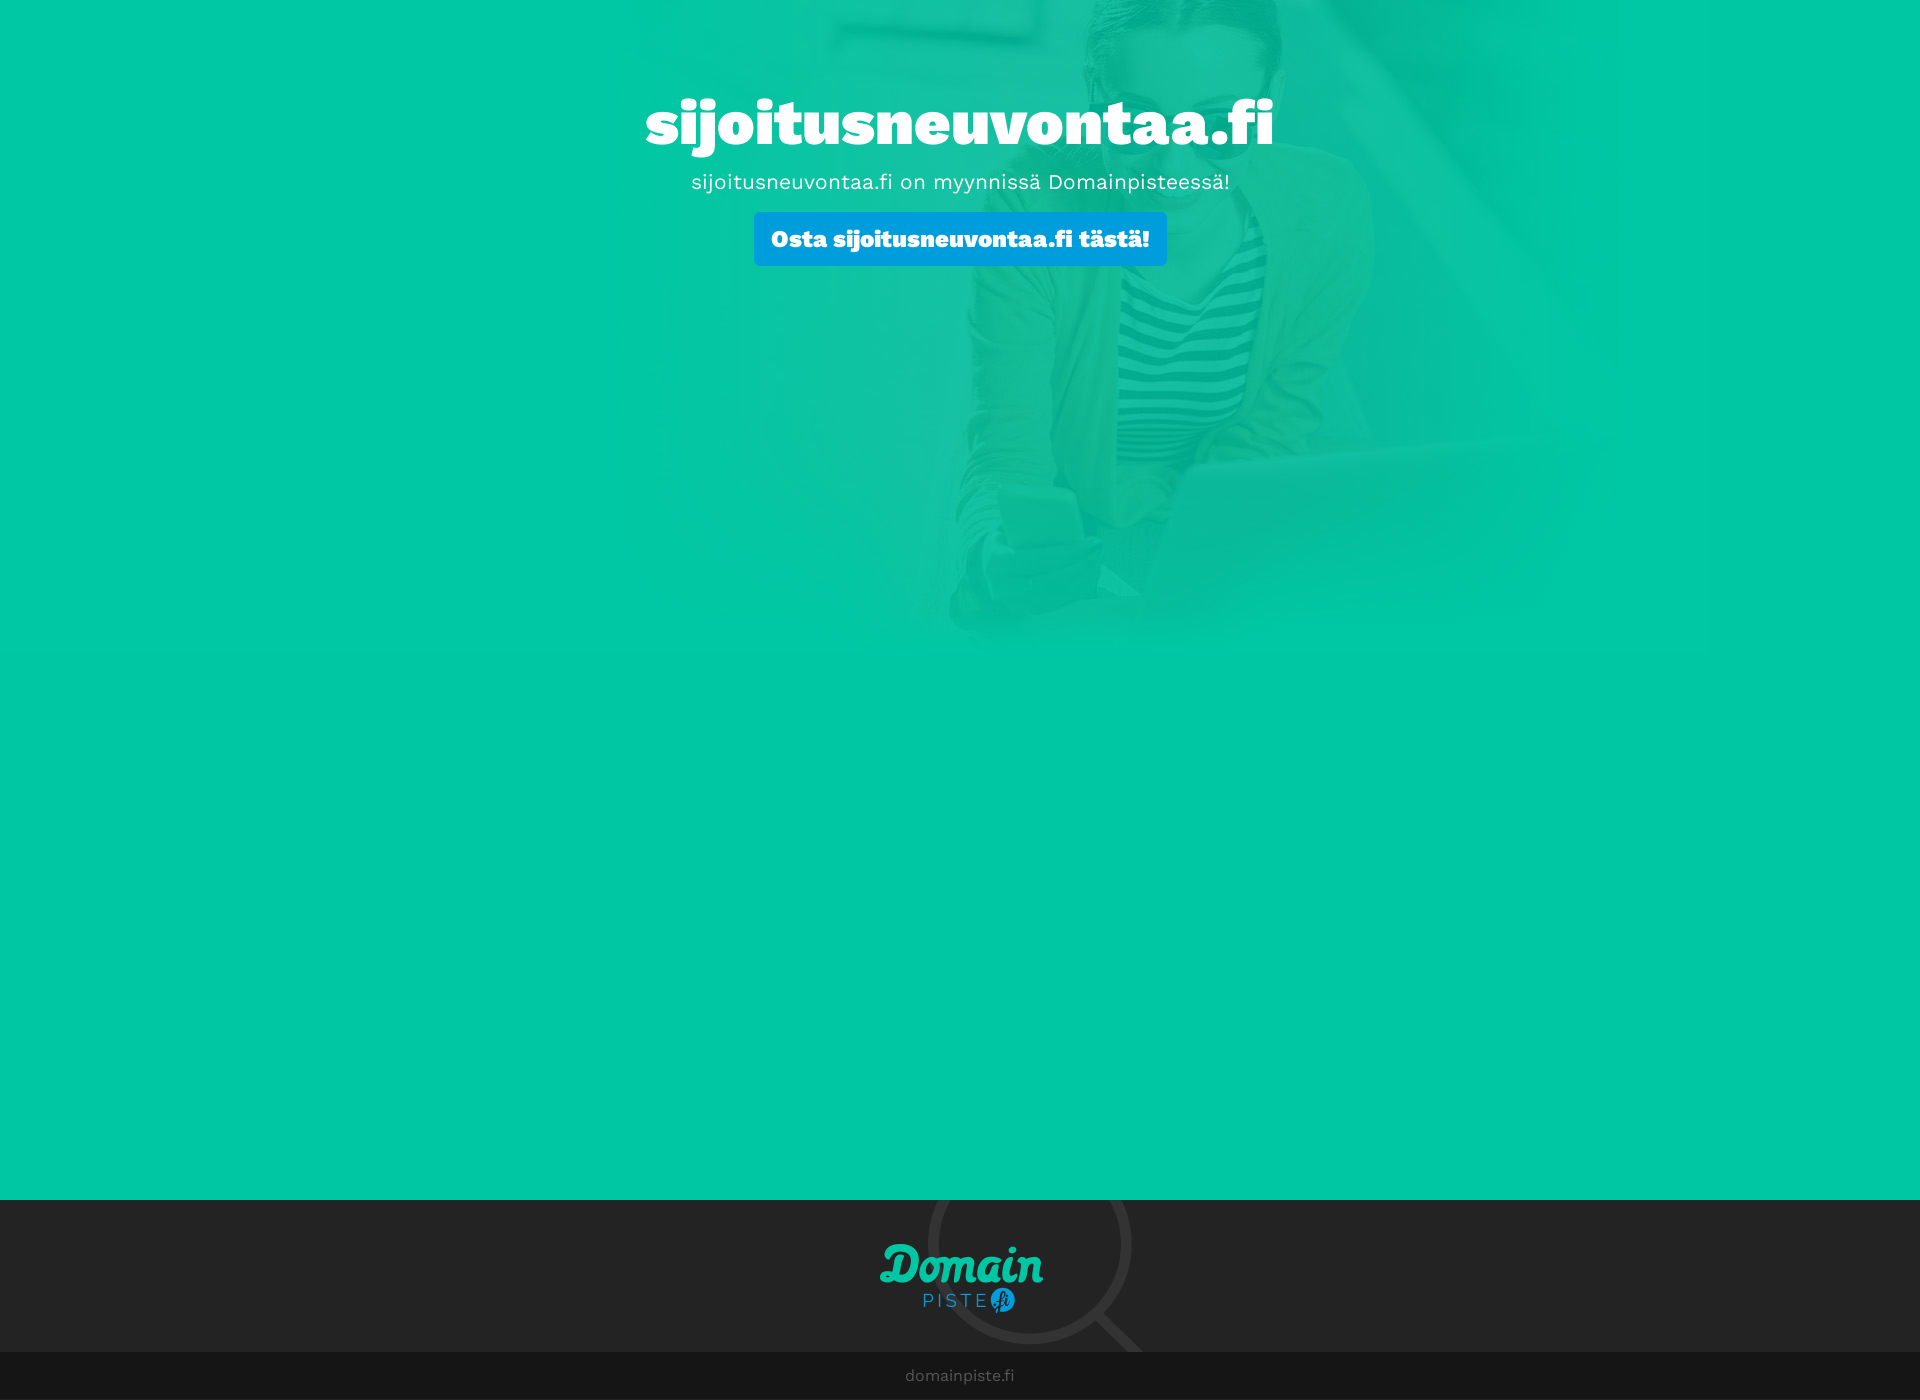 Skärmdump för sijoitusneuvontaa.fi